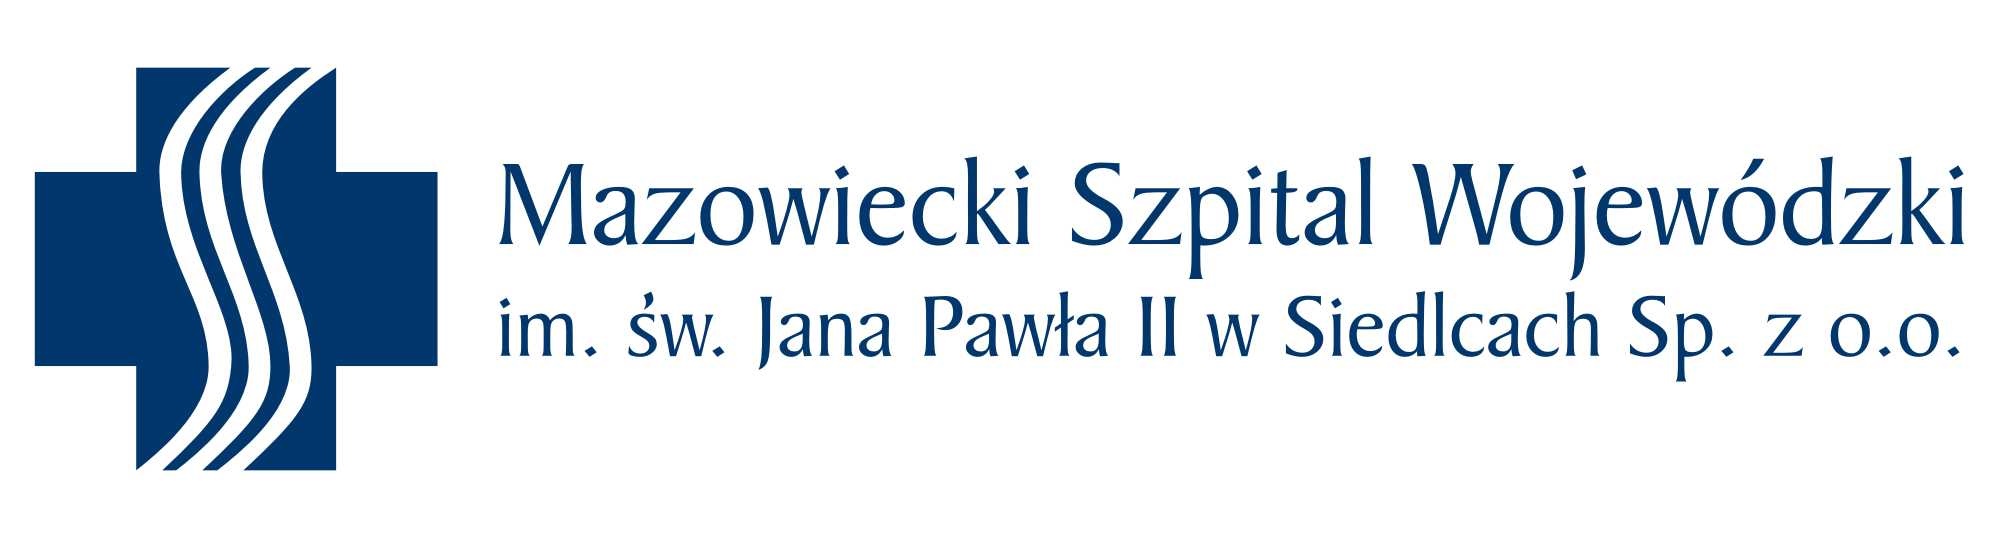 Logo Mazowiecki Szpital Wojewódzki im. św. Jana Pawła II w Siedlcach